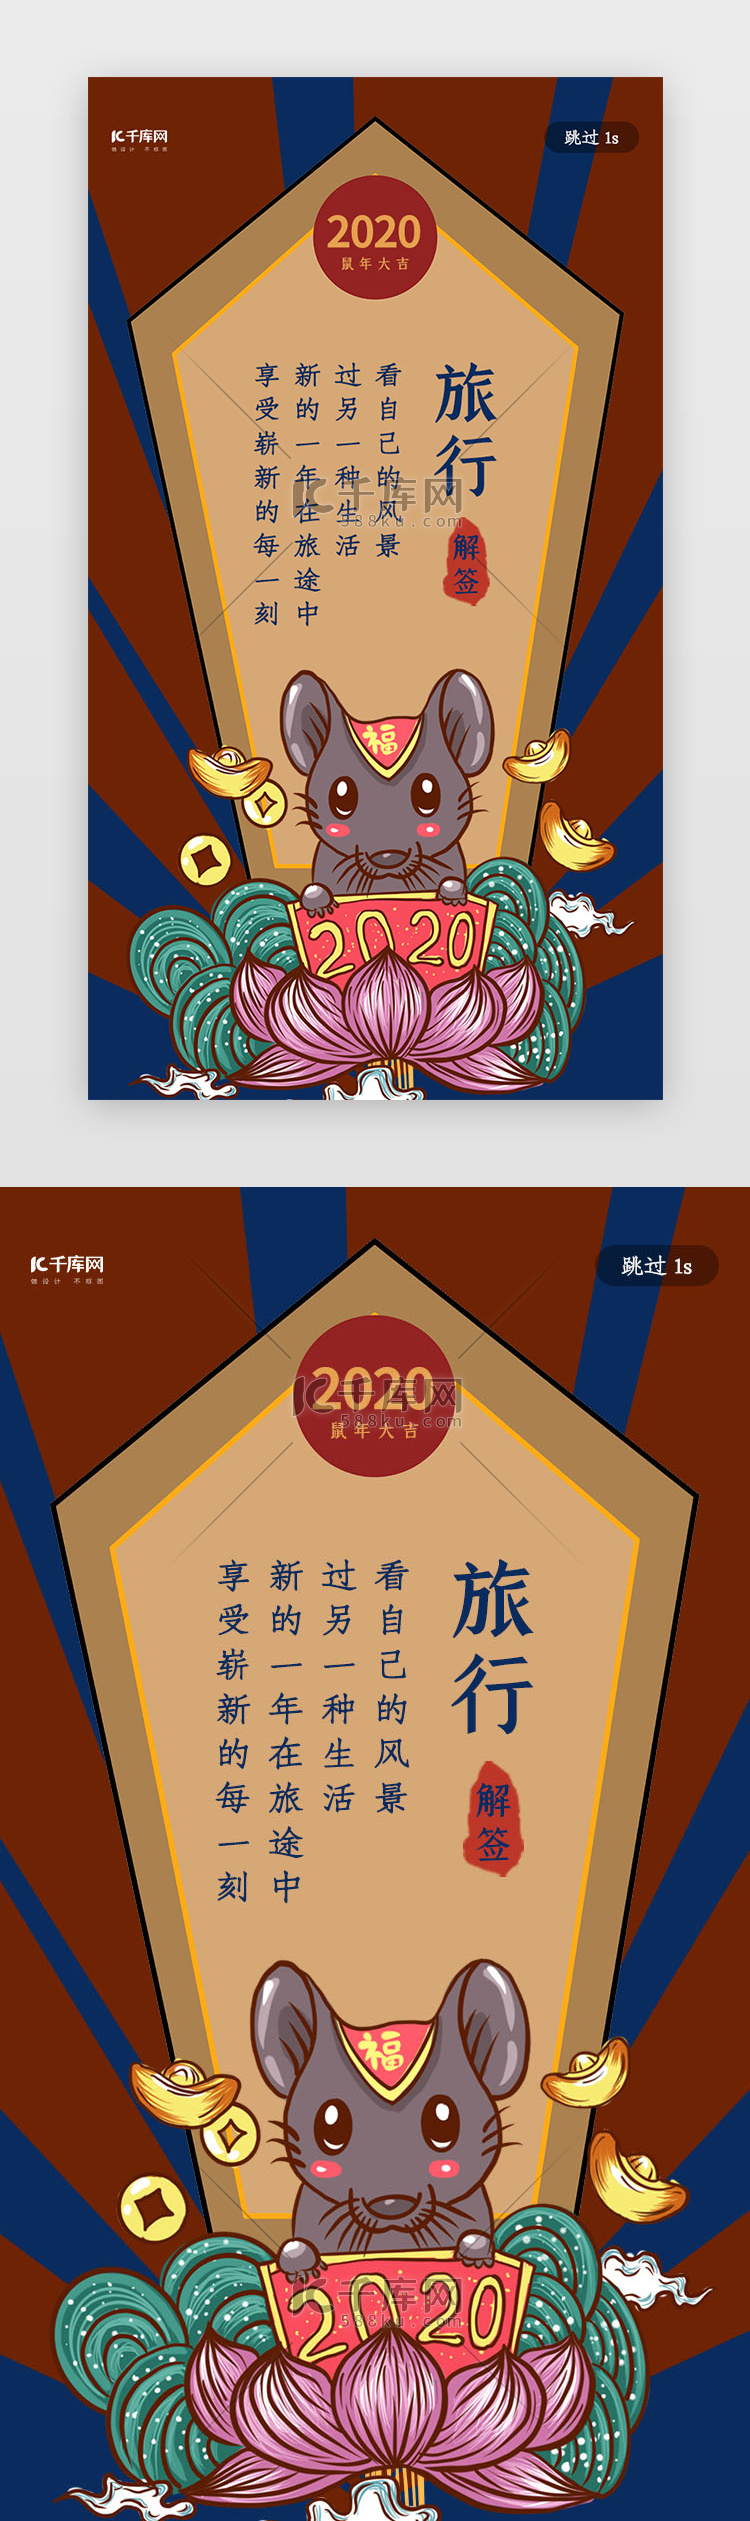 中国风鼠年新年签之旅行闪屏启动页引导页闪屏